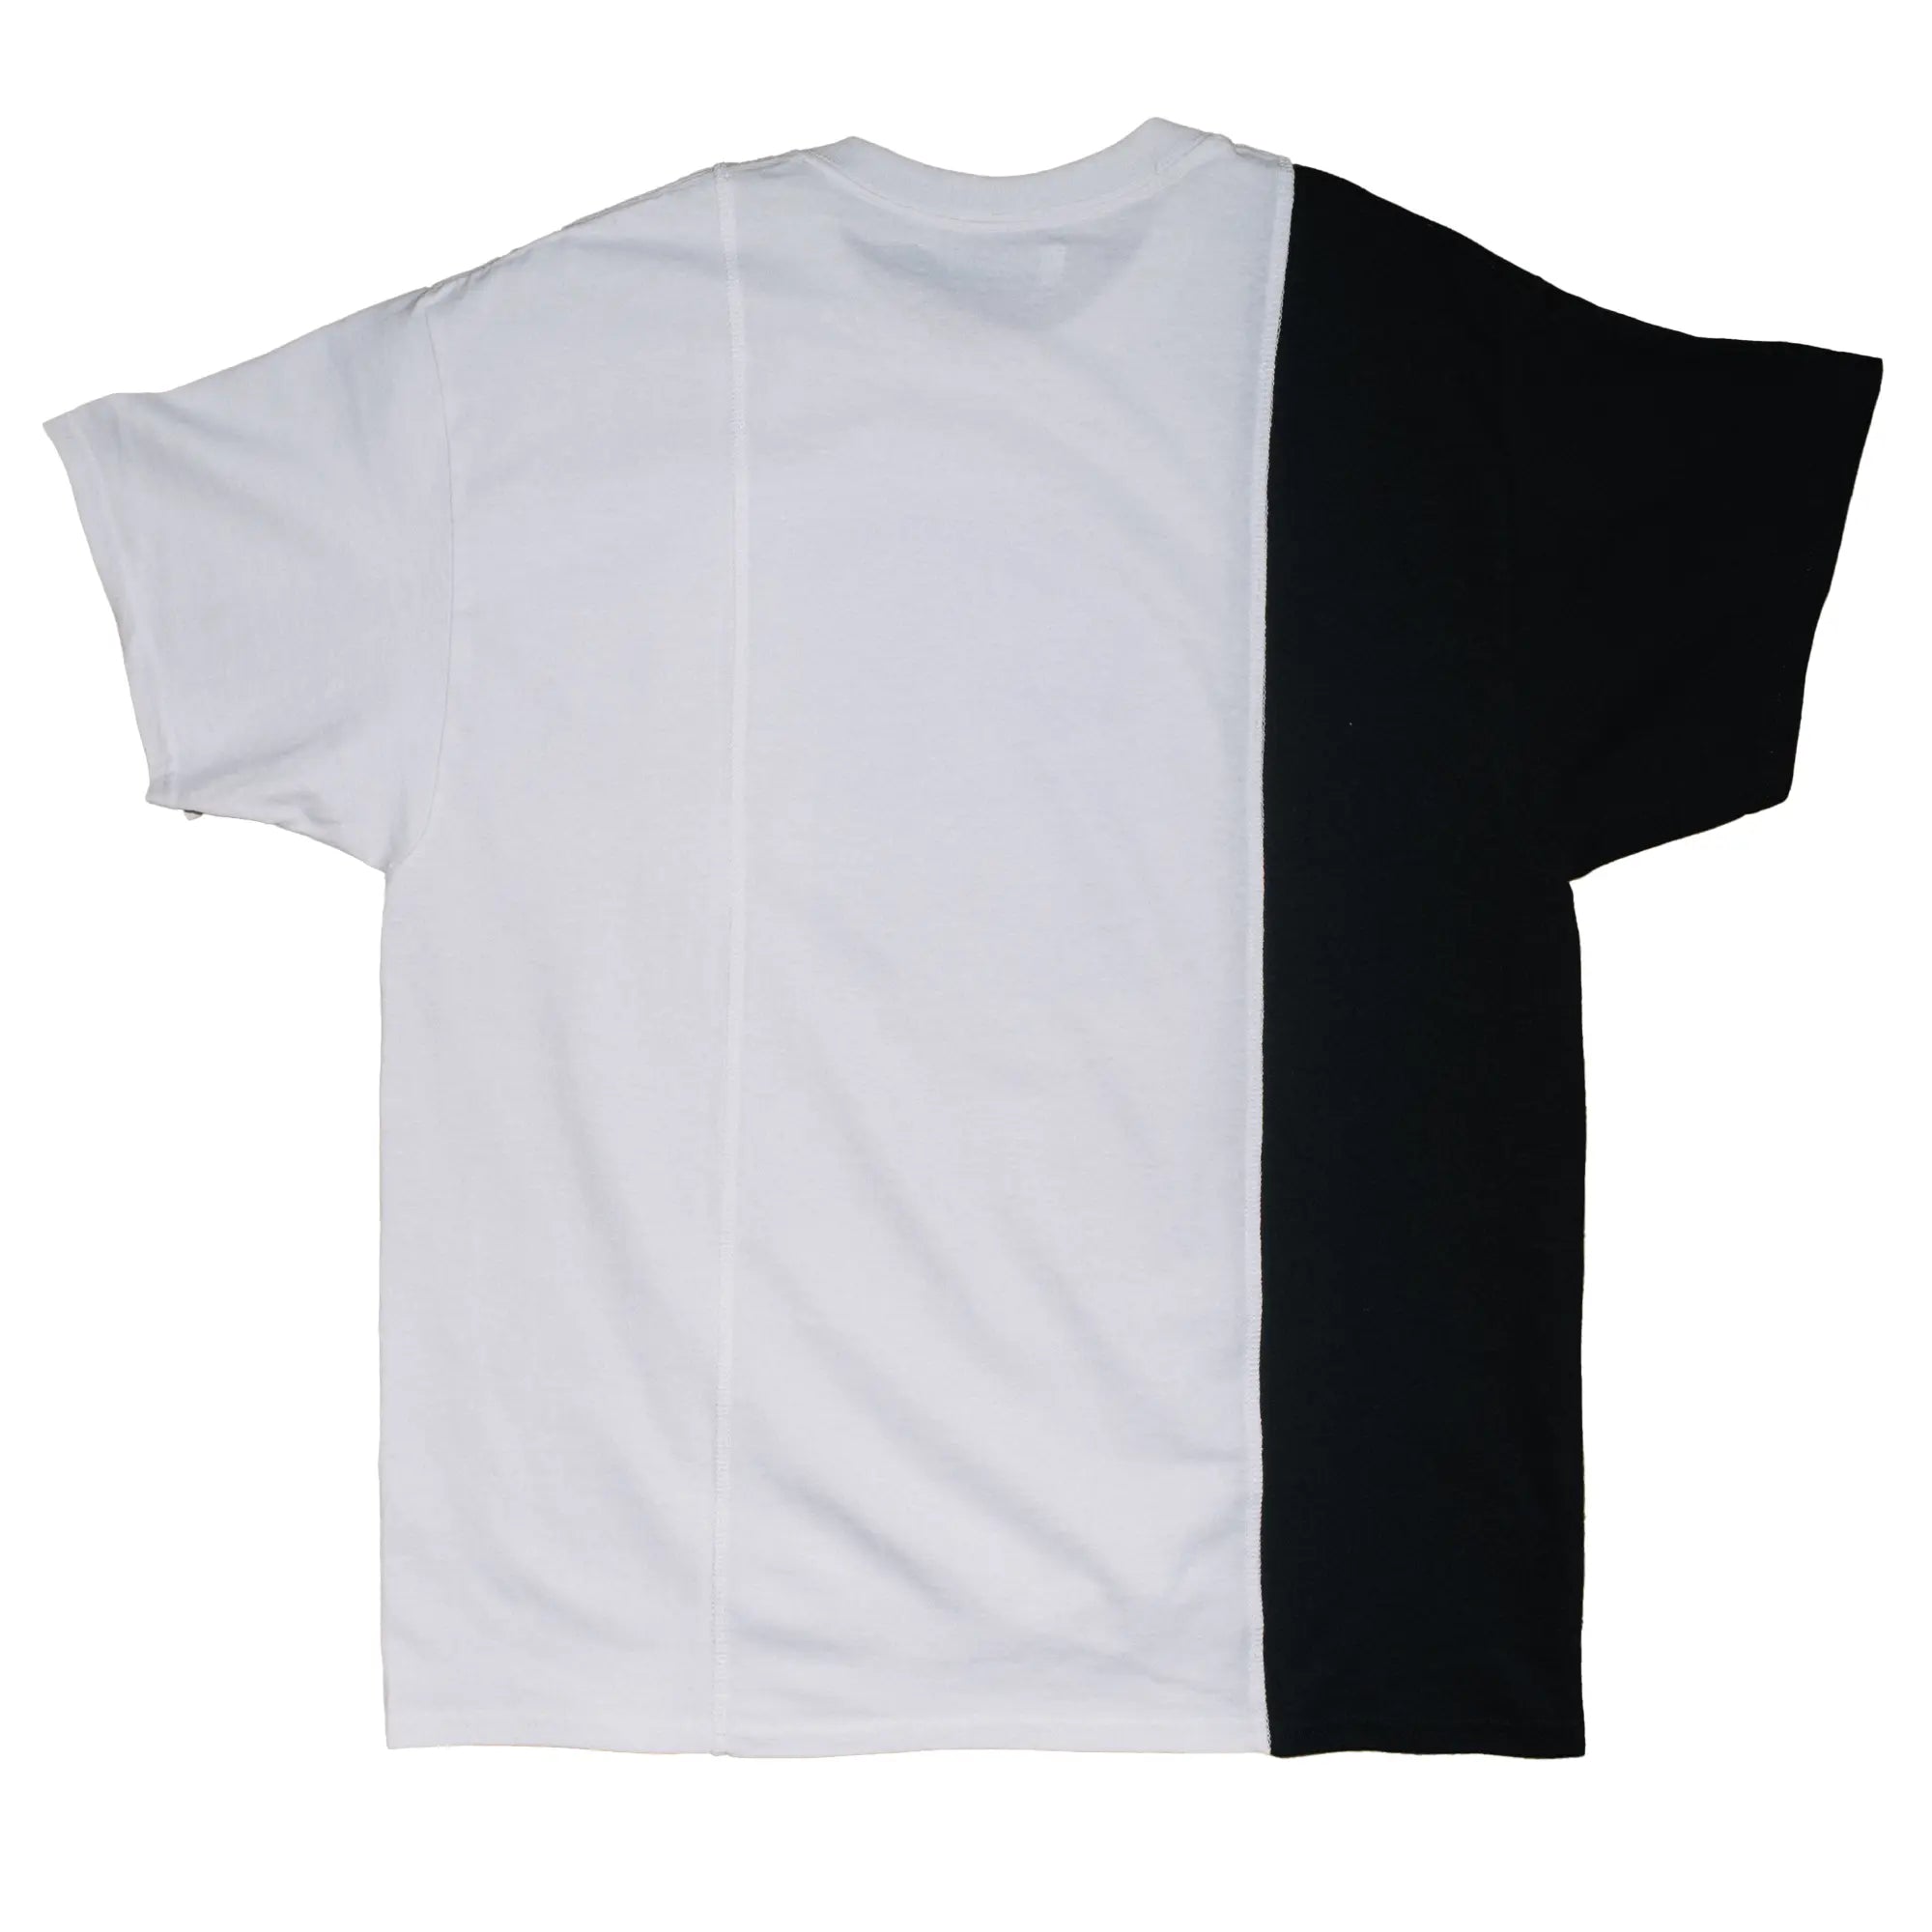 CUT-UP T-shirt no. 2304 - XL